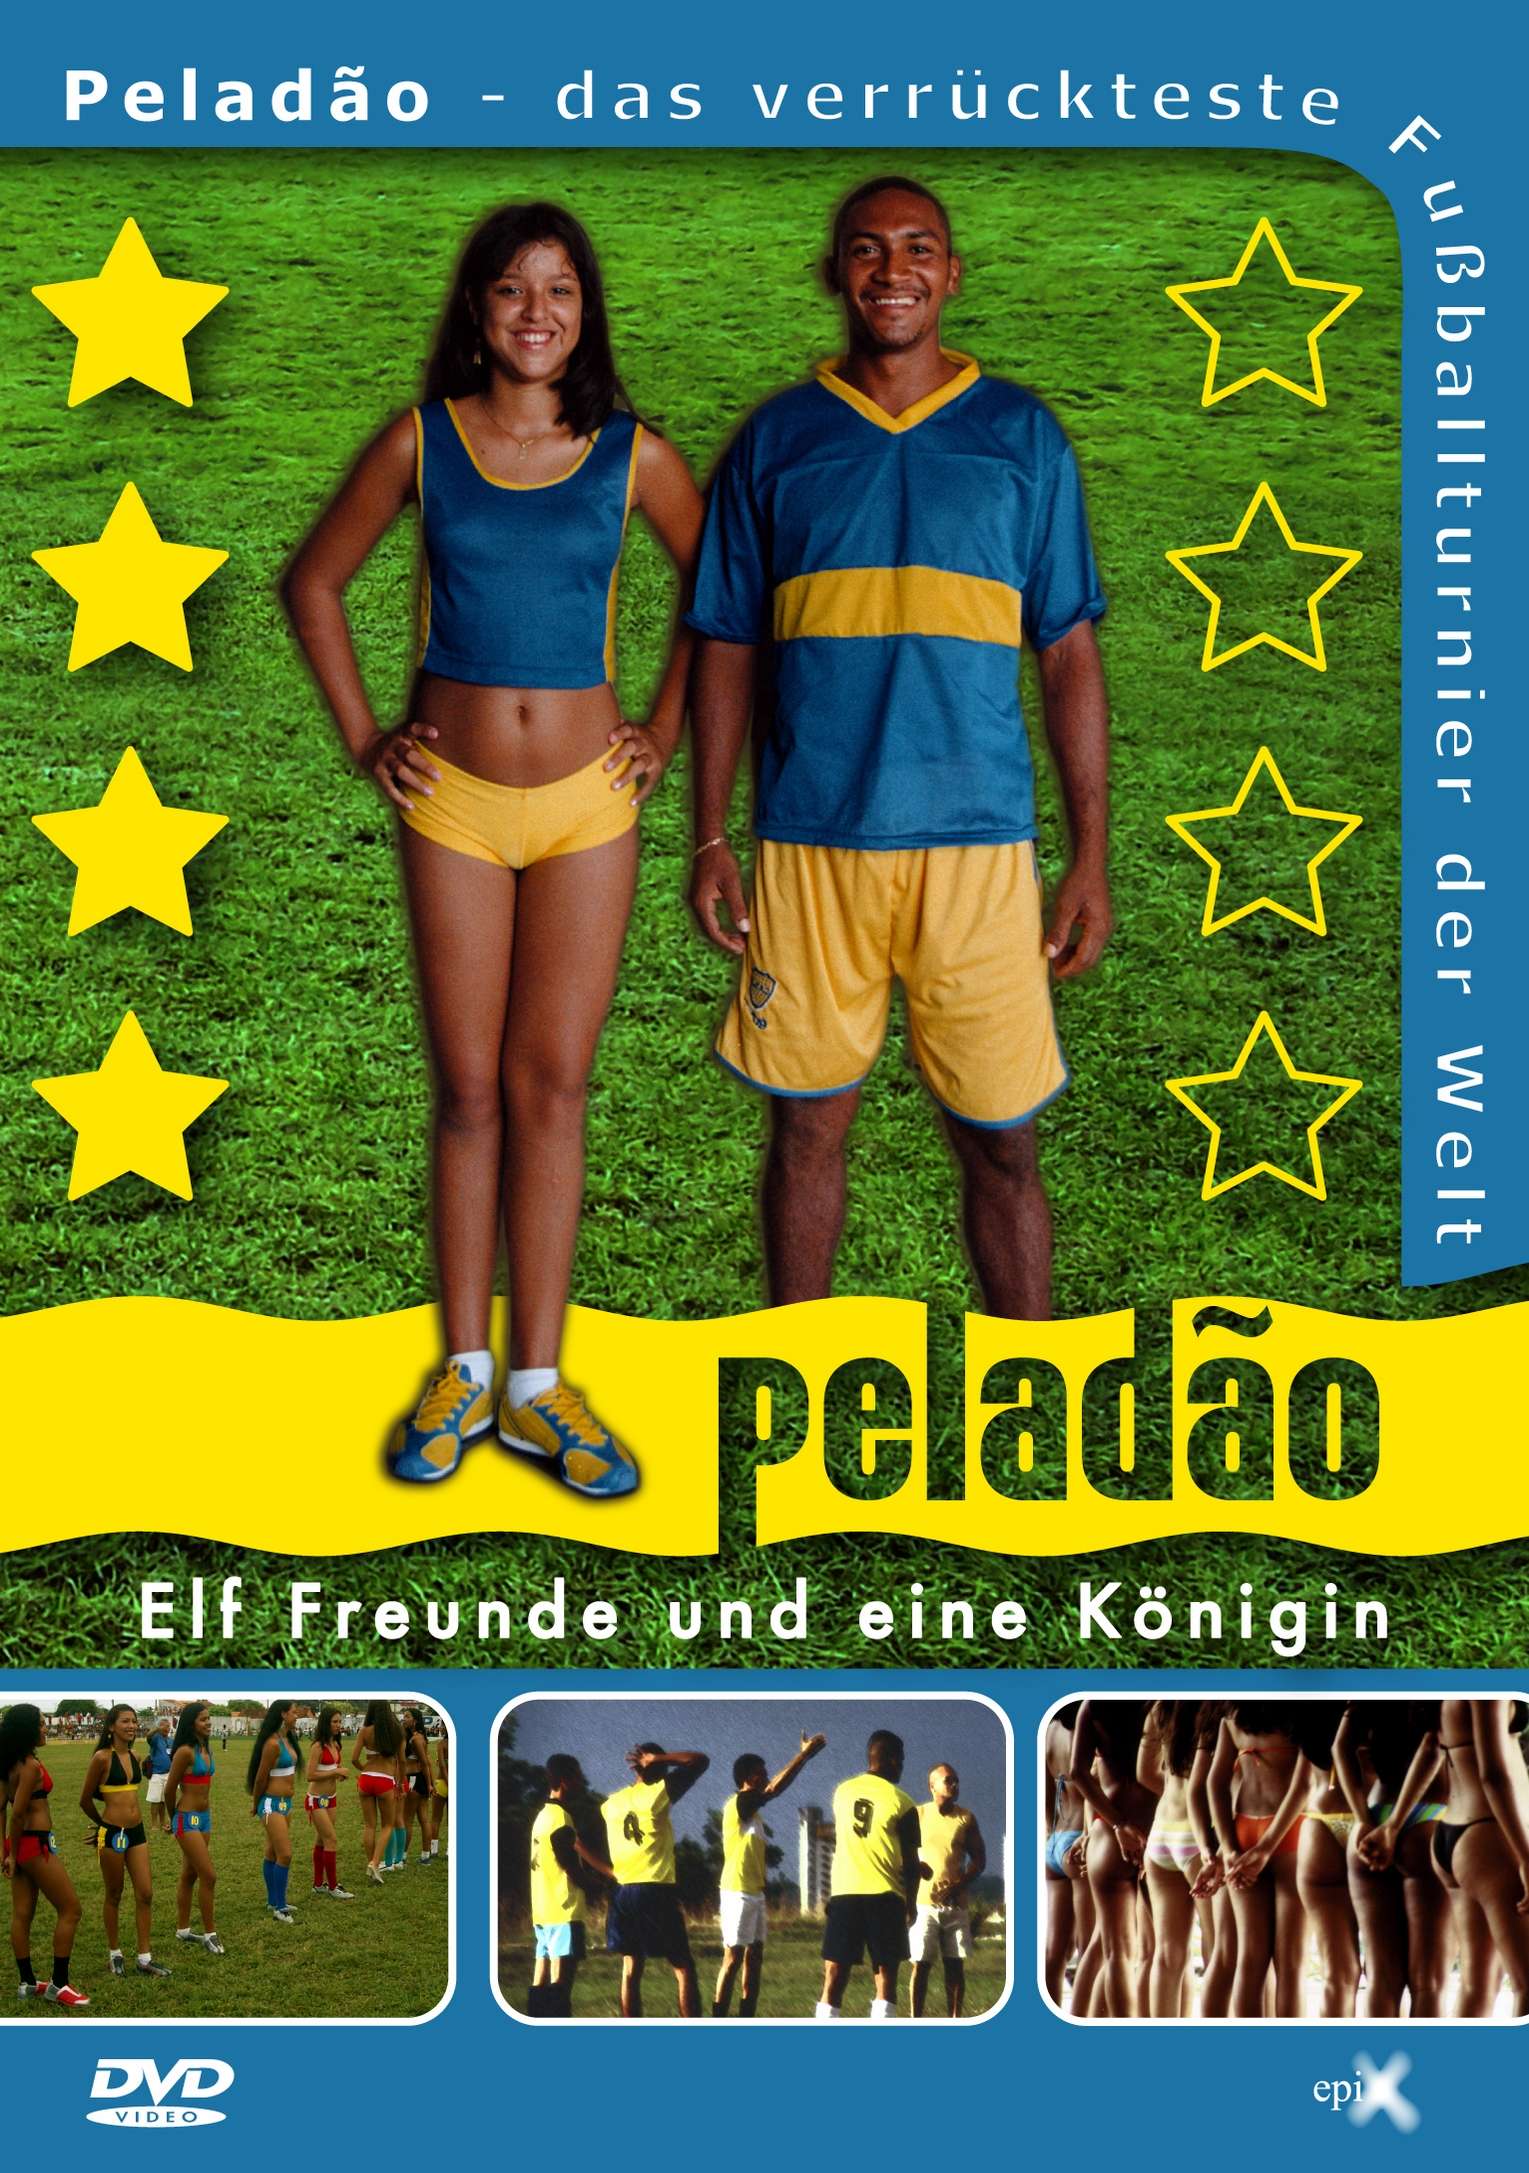 PELADAO Frontcover final